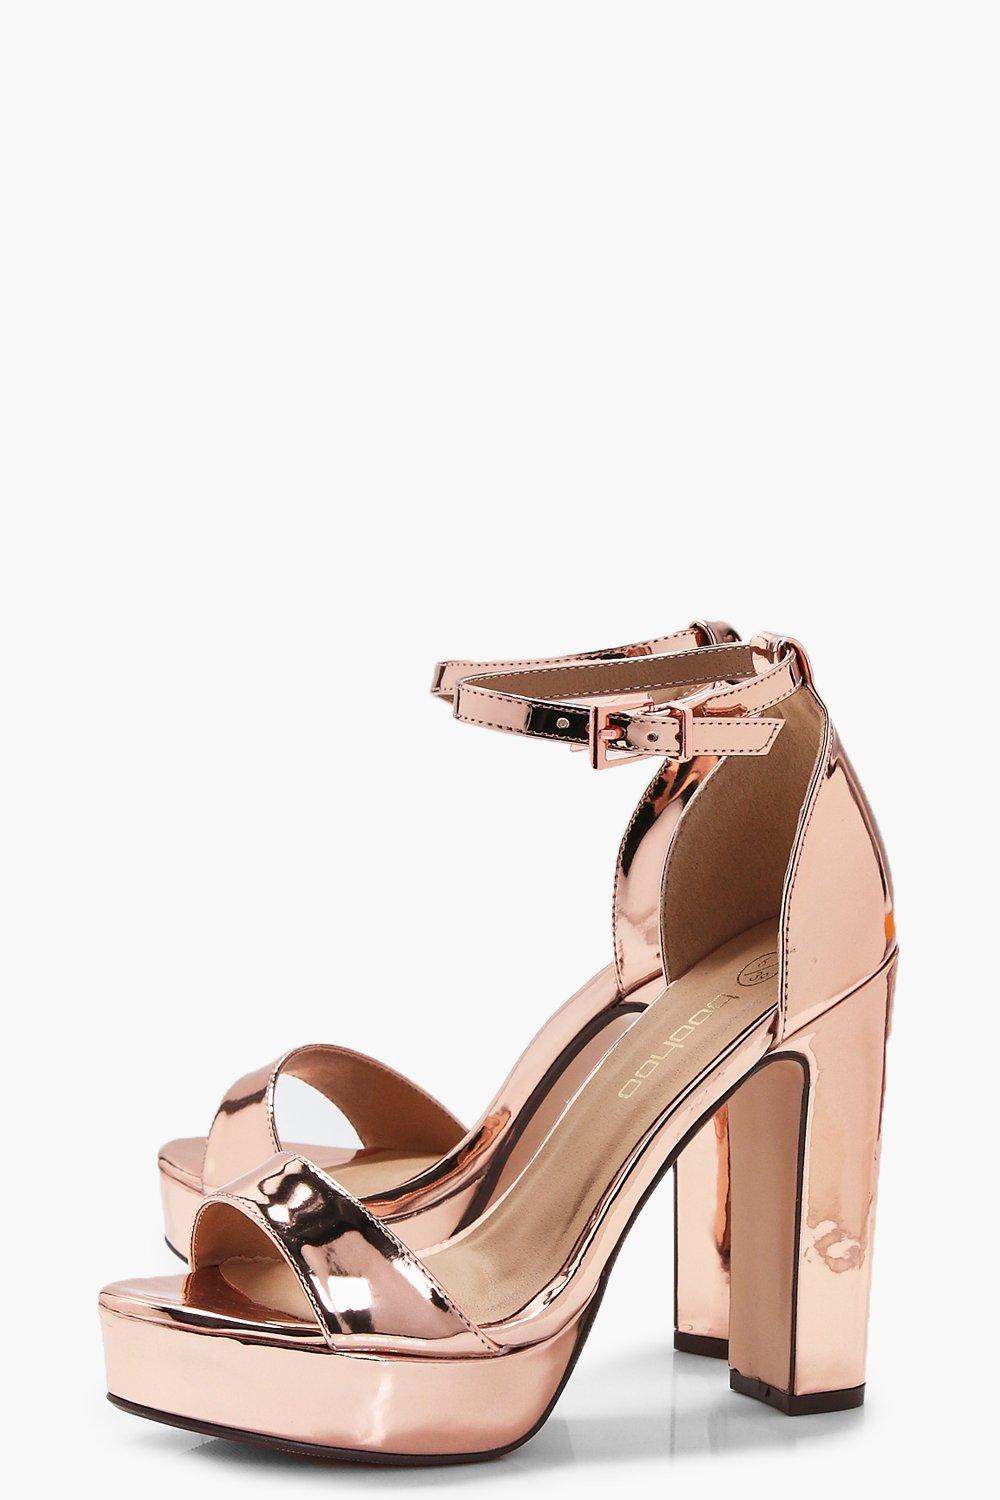 wide gold heels